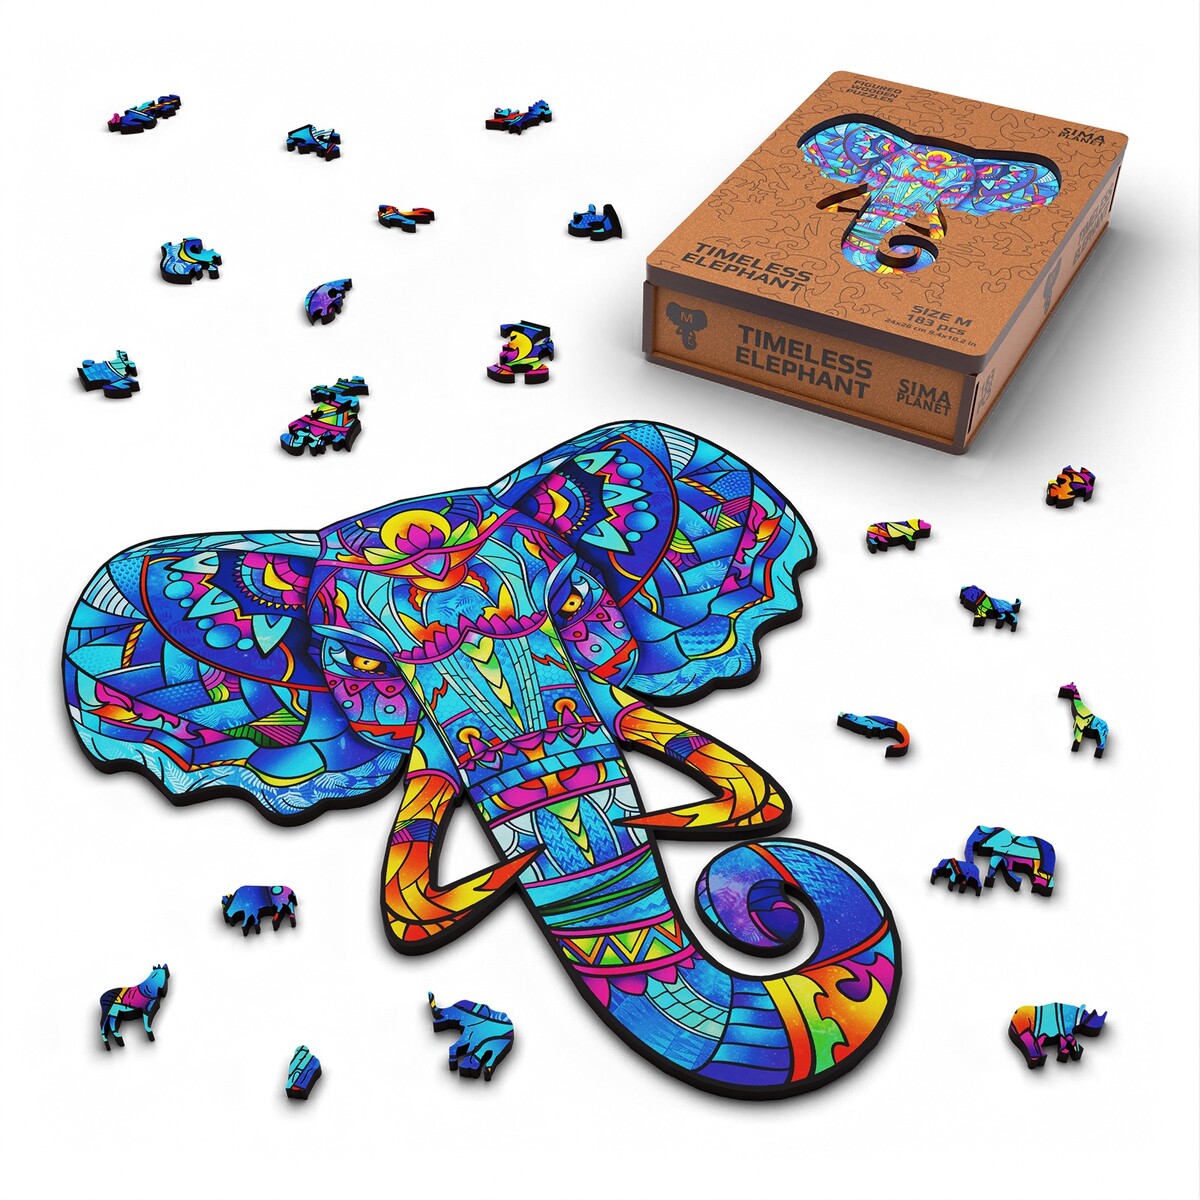 Пазл фигурный деревянный timeless elephant, размер 24х26 см, 183 детали развивающая игрушка конструктор деревянный alatoys городок окрашенный 23 детали